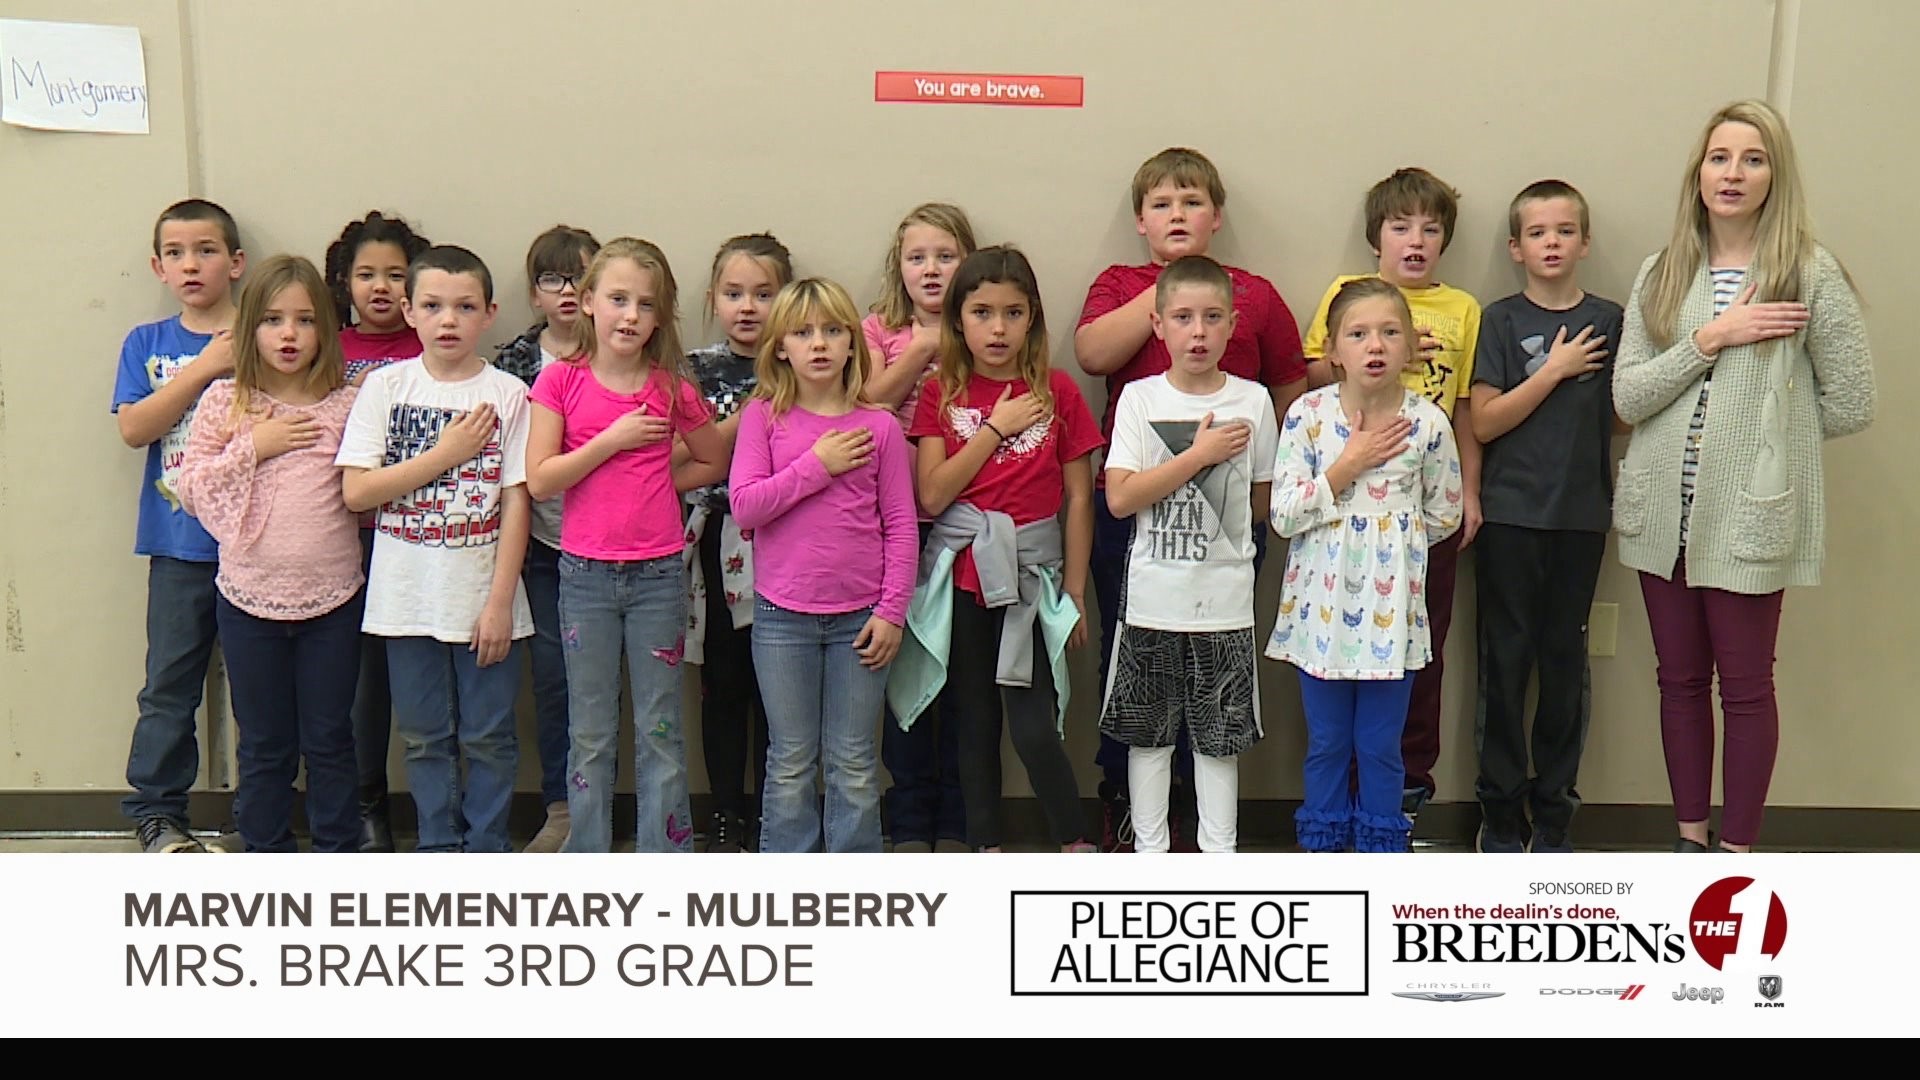 Marvin Elementary, Mulberry Mrs. Brake 3rd Grade